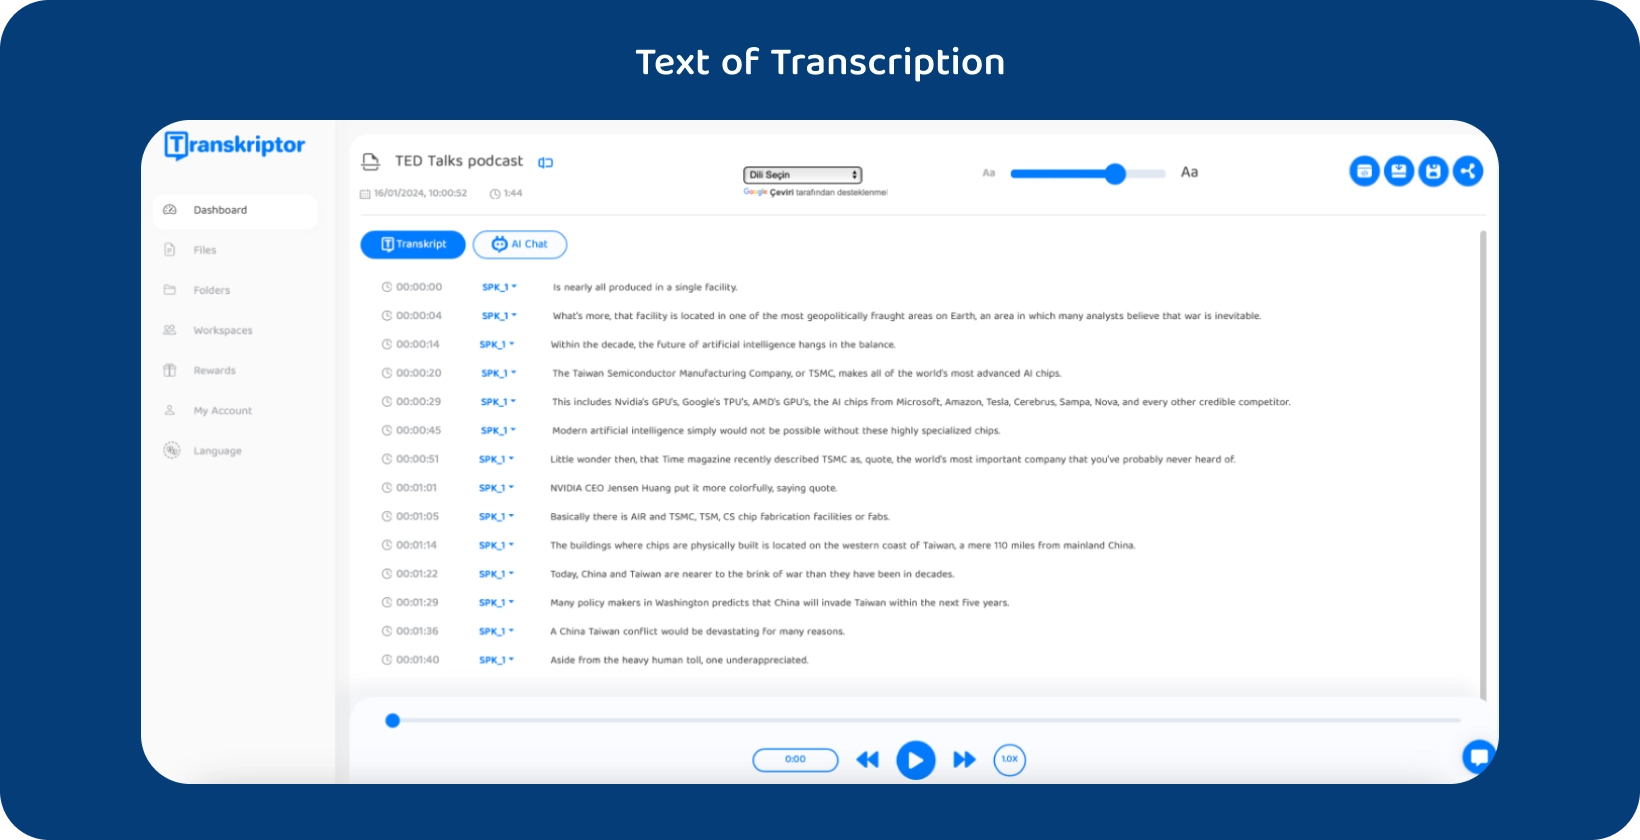 Transkriptor interfejs koji prikazuje transkribovani TED Talks podkast.